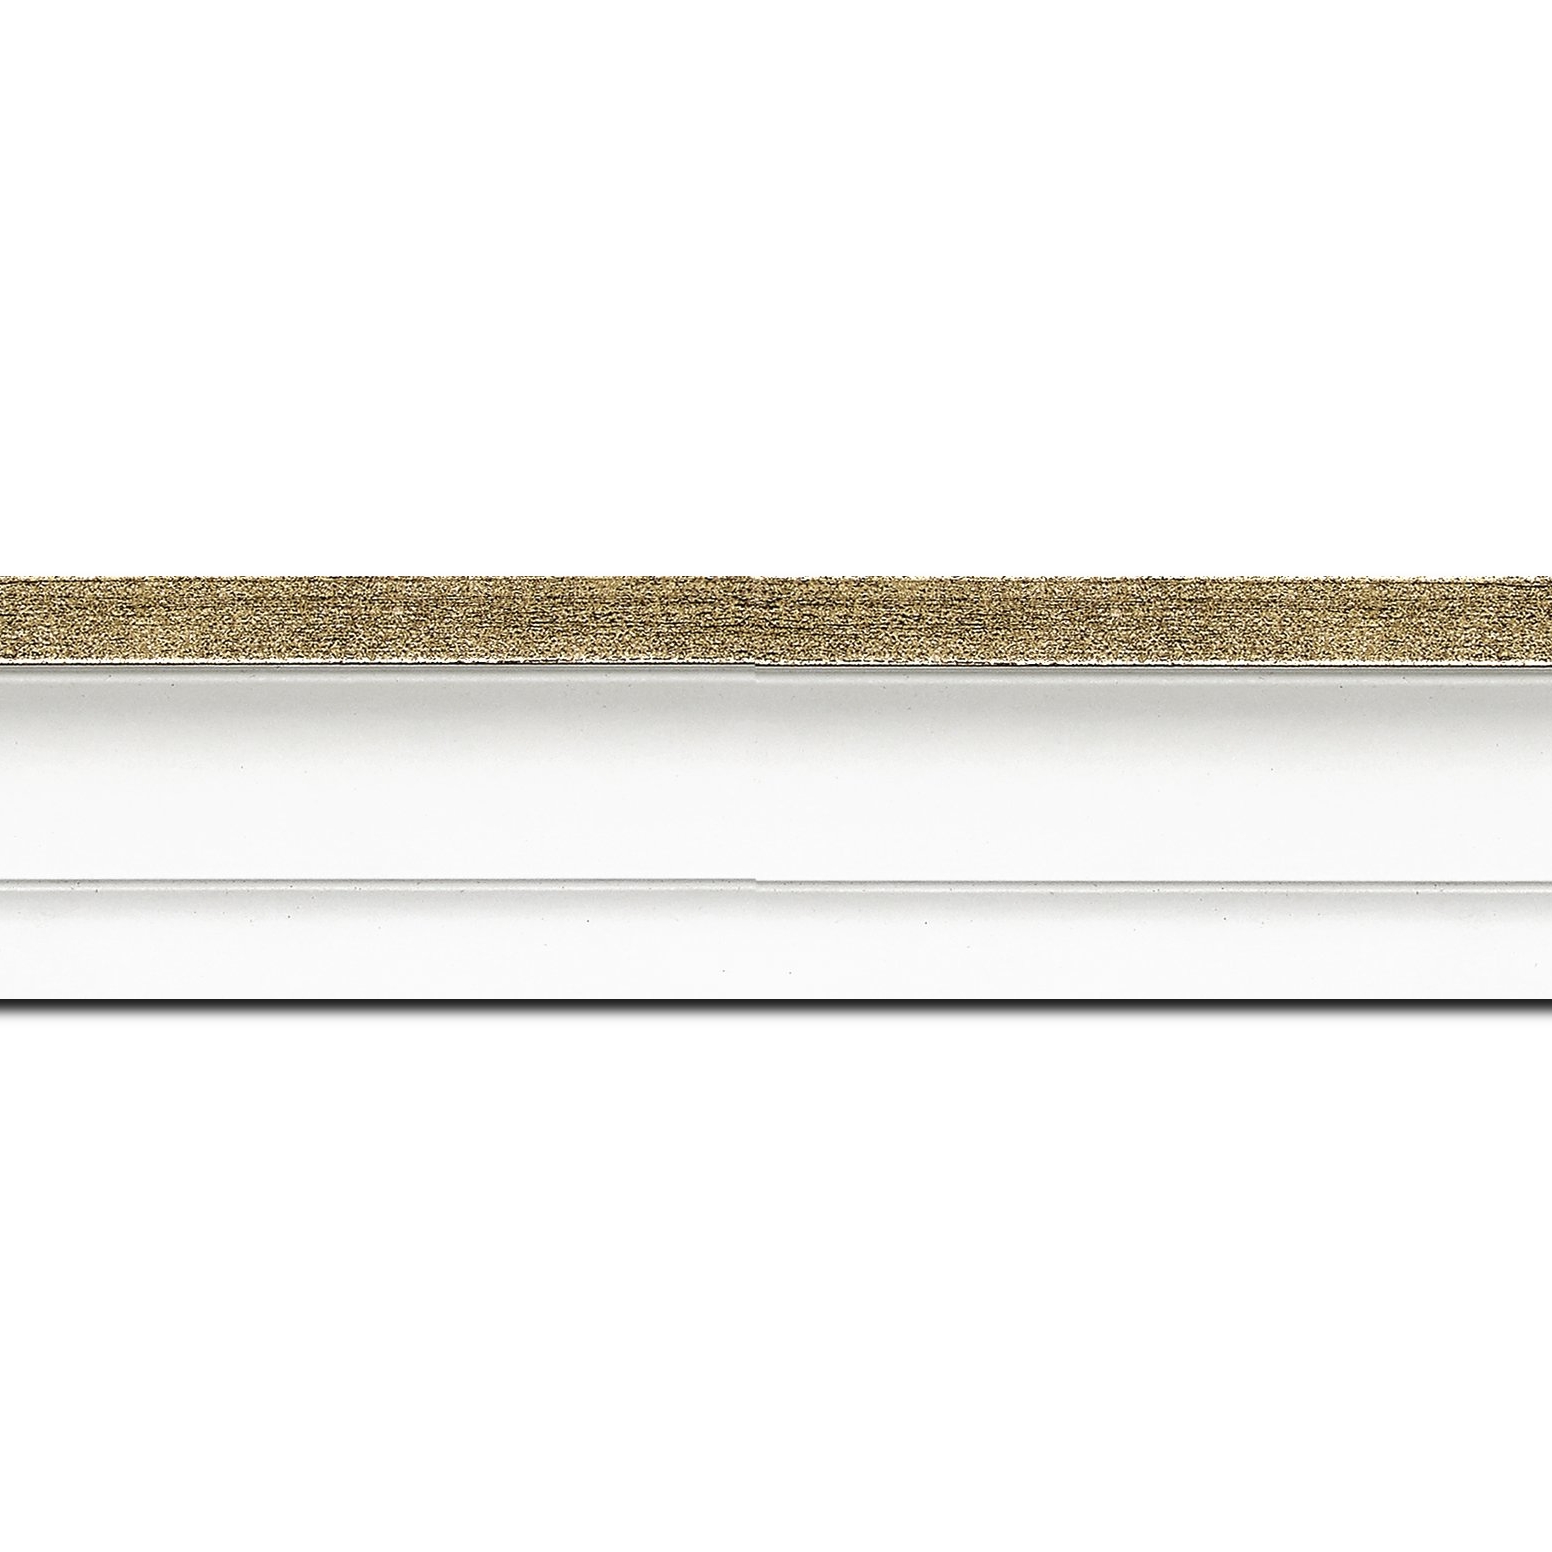 Baguette longueur 1.40m bois caisse américaine profil escalier largeur 4.4cm blanc mat filet or (spécialement conçu pour les châssis d'une épaisseur jusqu’à 2.5cm )